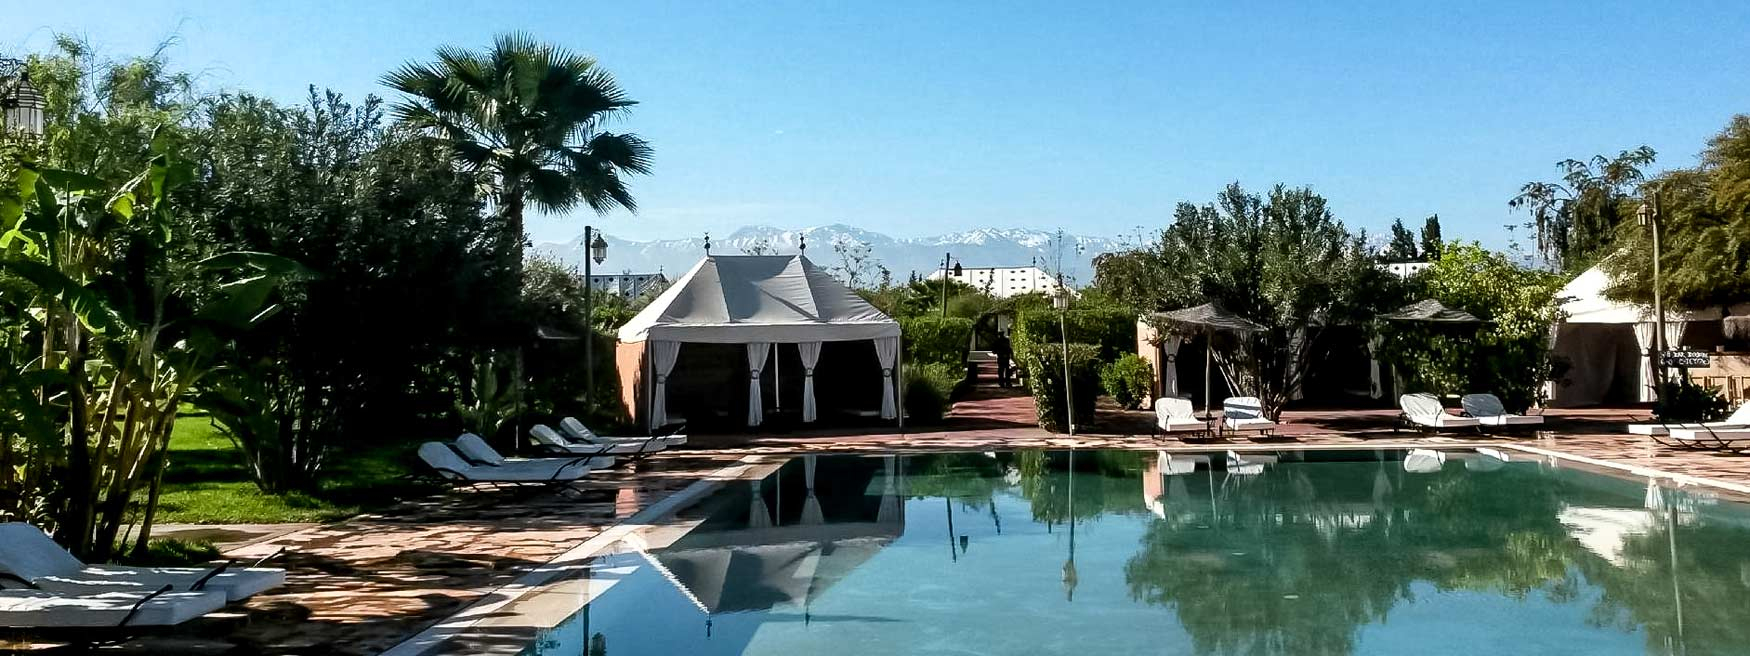 Jardin D'Issil : Chambres D'Hôtes En Tentes Caïdales De Luxe À Marrakech pour Salon De Jardin Castorama Suite À Une Douche